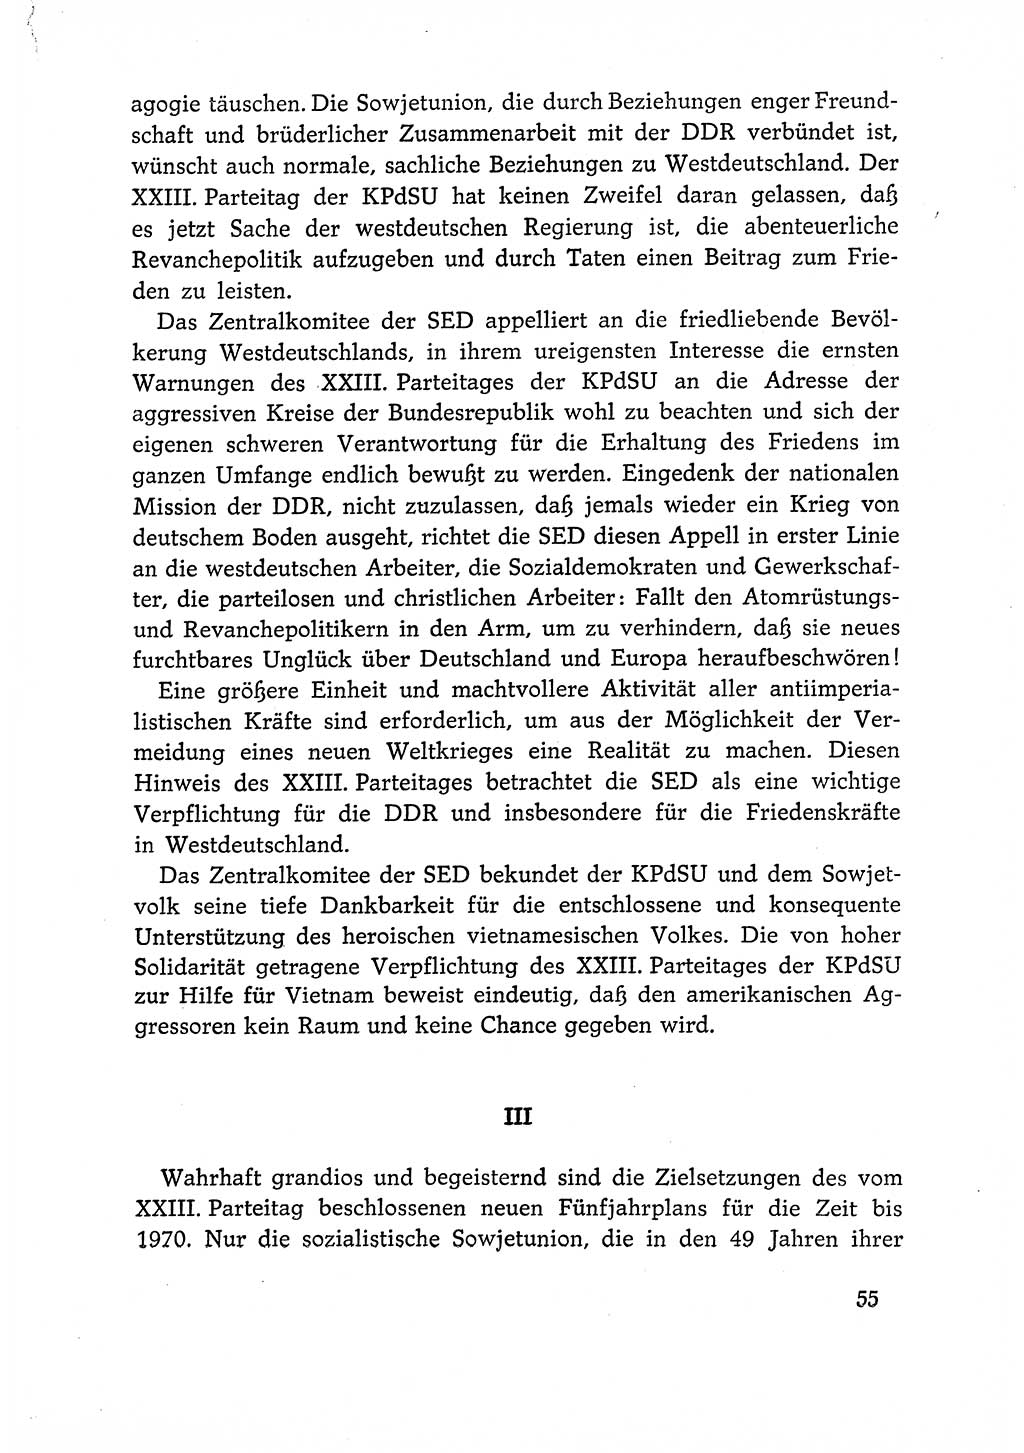 Dokumente der Sozialistischen Einheitspartei Deutschlands (SED) [Deutsche Demokratische Republik (DDR)] 1966-1967, Seite 55 (Dok. SED DDR 1966-1967, S. 55)